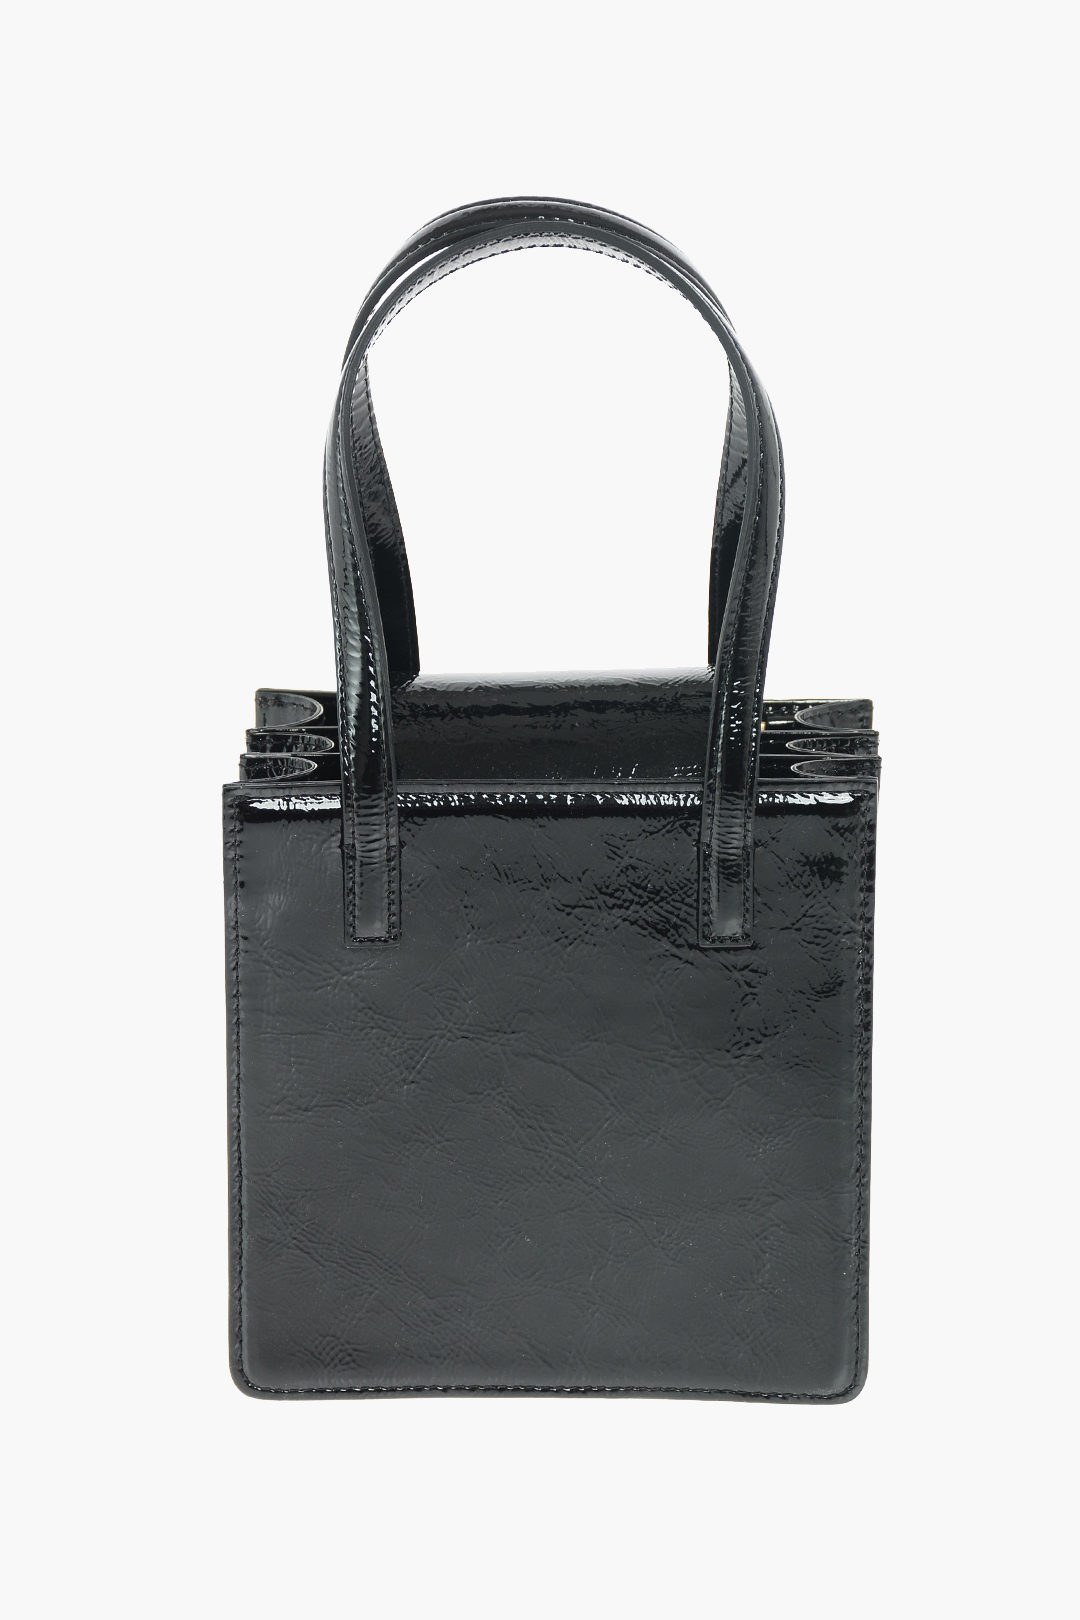 Marge Sherwood Black Patent Box Shoulder Bag